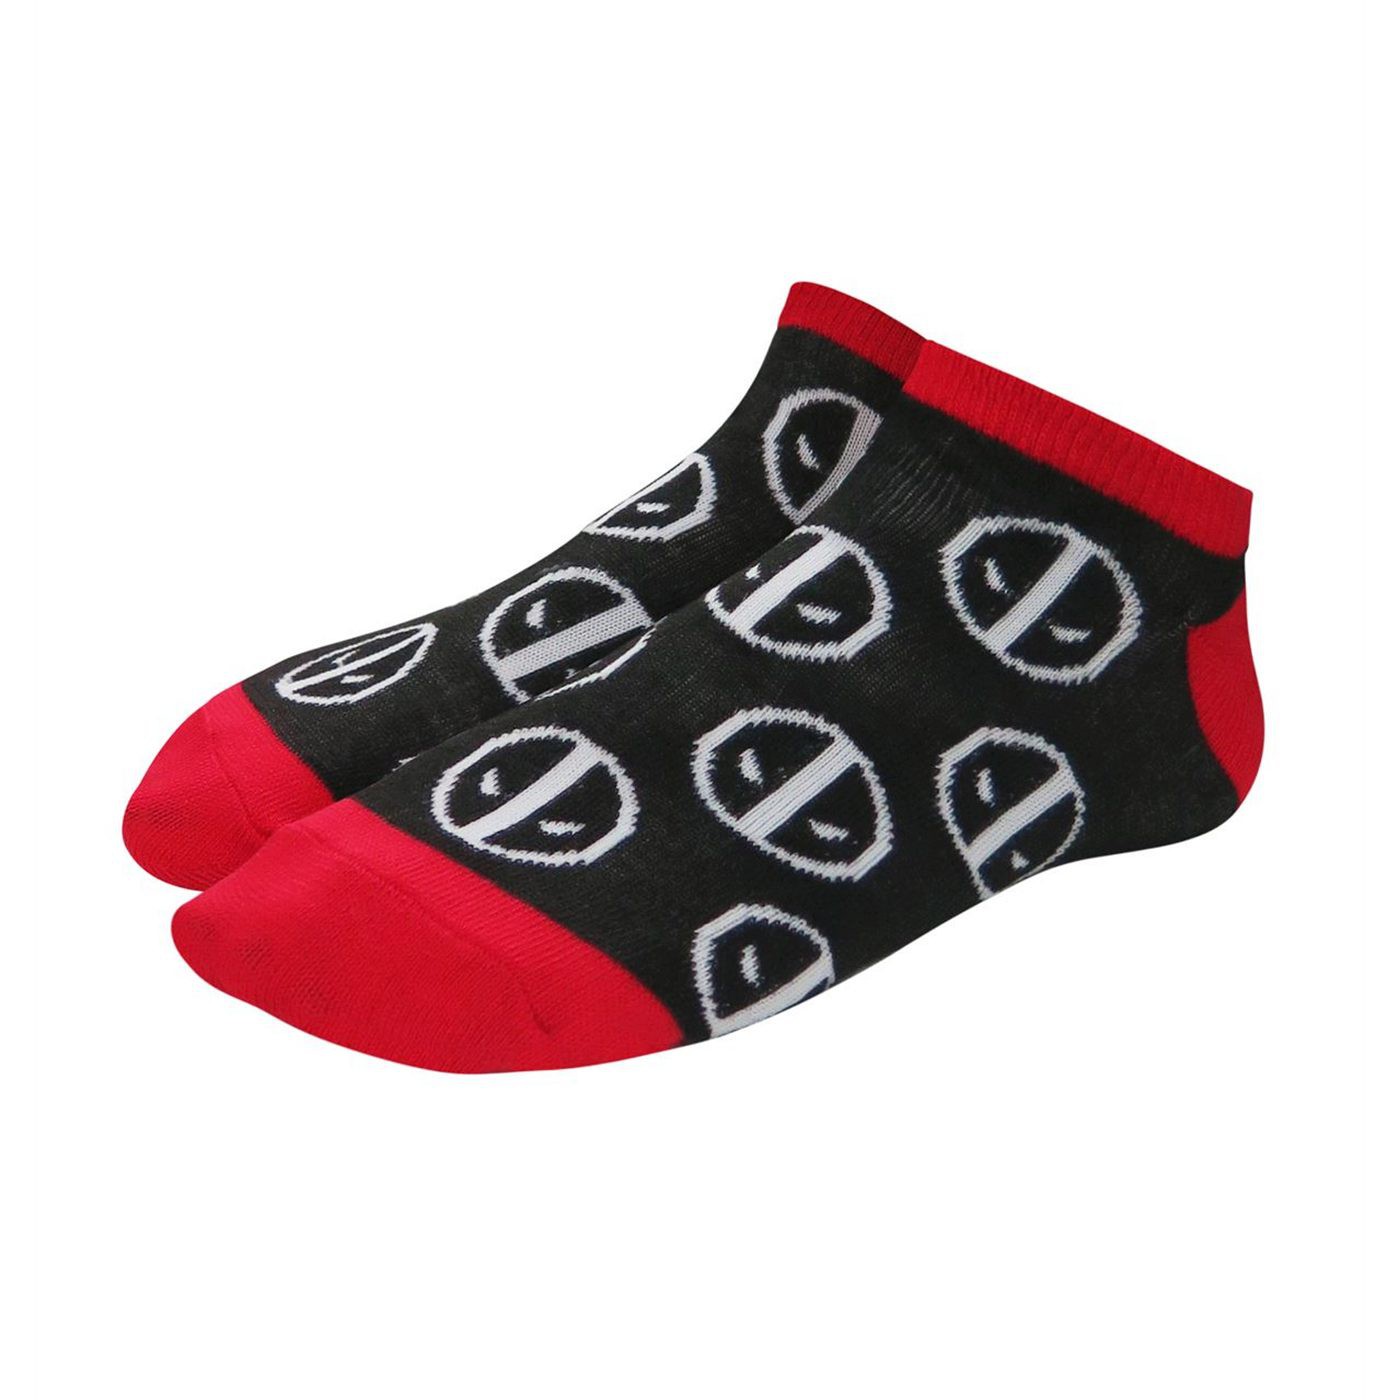 Deadpool Symbols Women's Socks 5 Pack